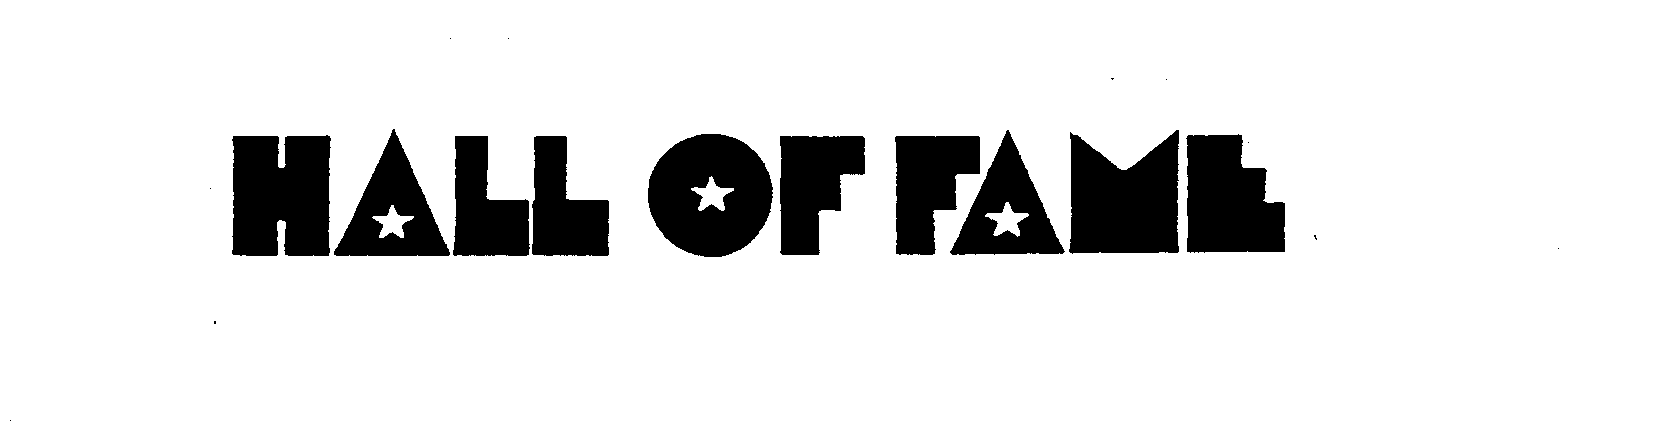 Trademark Logo HALL OF FAME